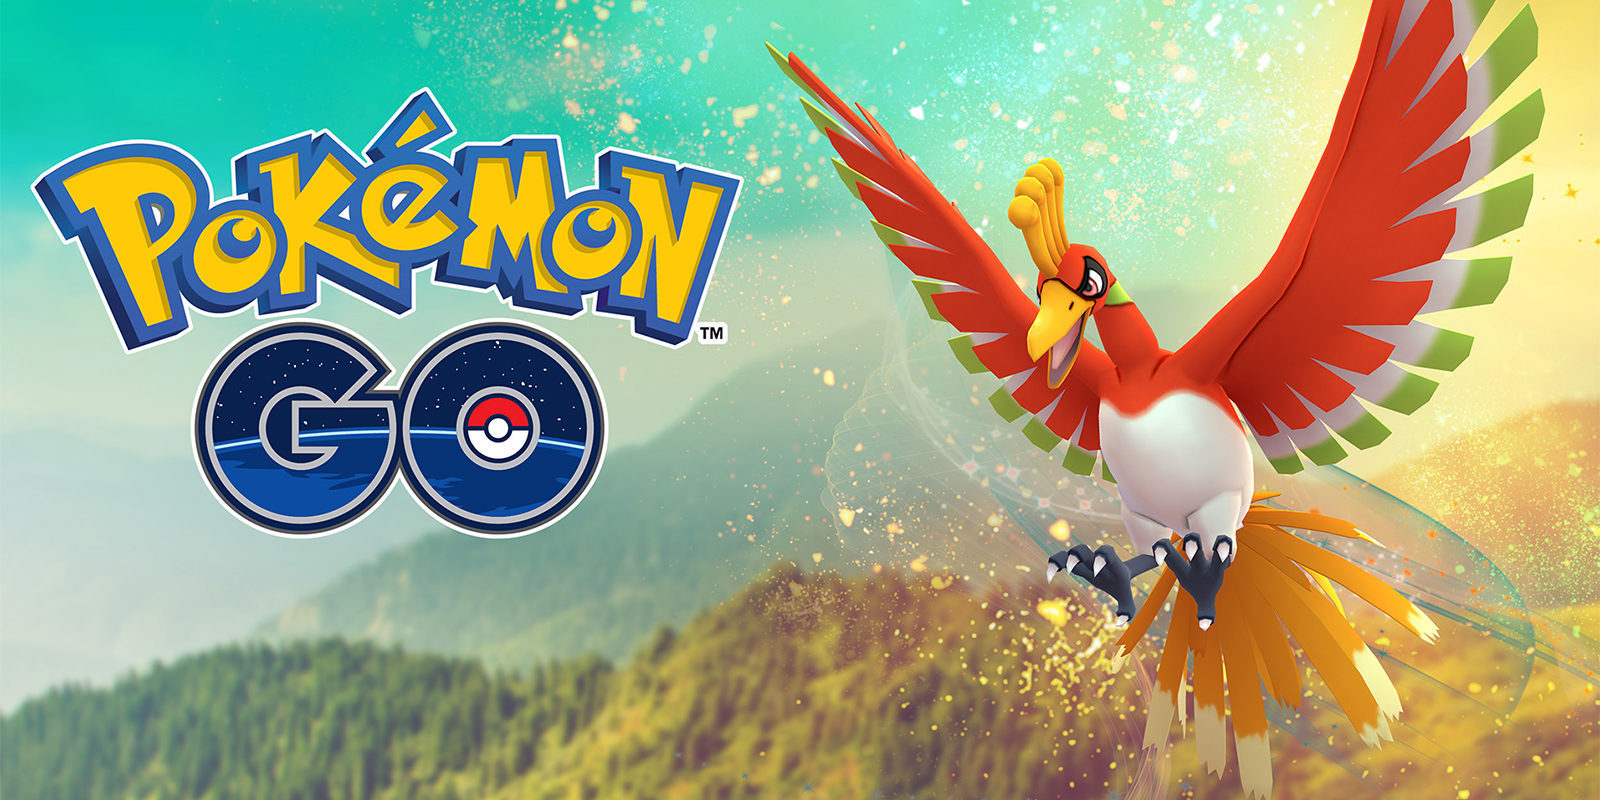 Los intercambios y combates de pokémon siguen previstos, pero sin fecha, para 'Pokémon GO'